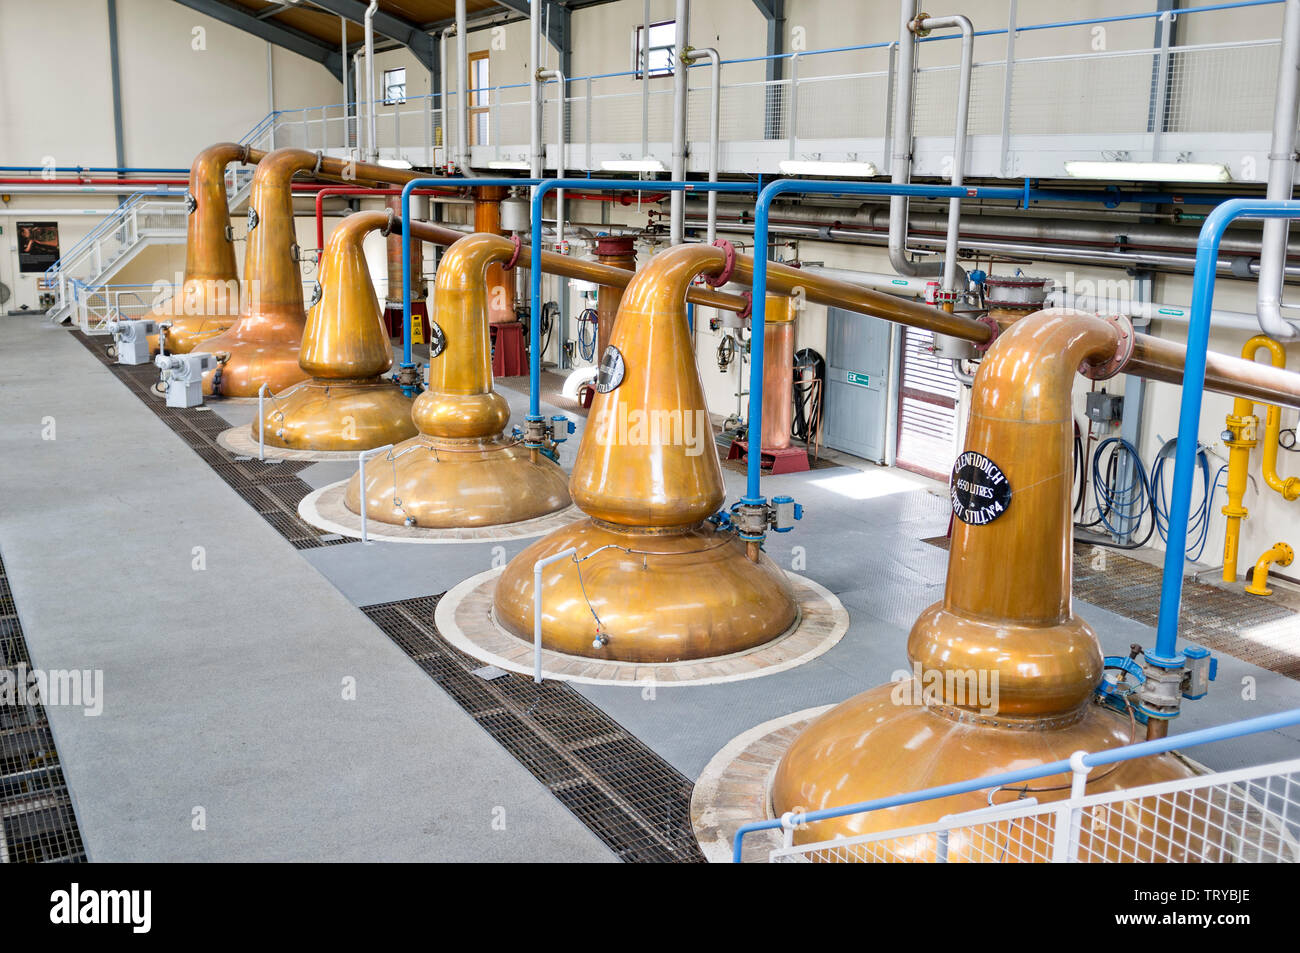 Les alambiques hall du Glenfiddich Distillery Ecosse Ville Duff Banque D'Images